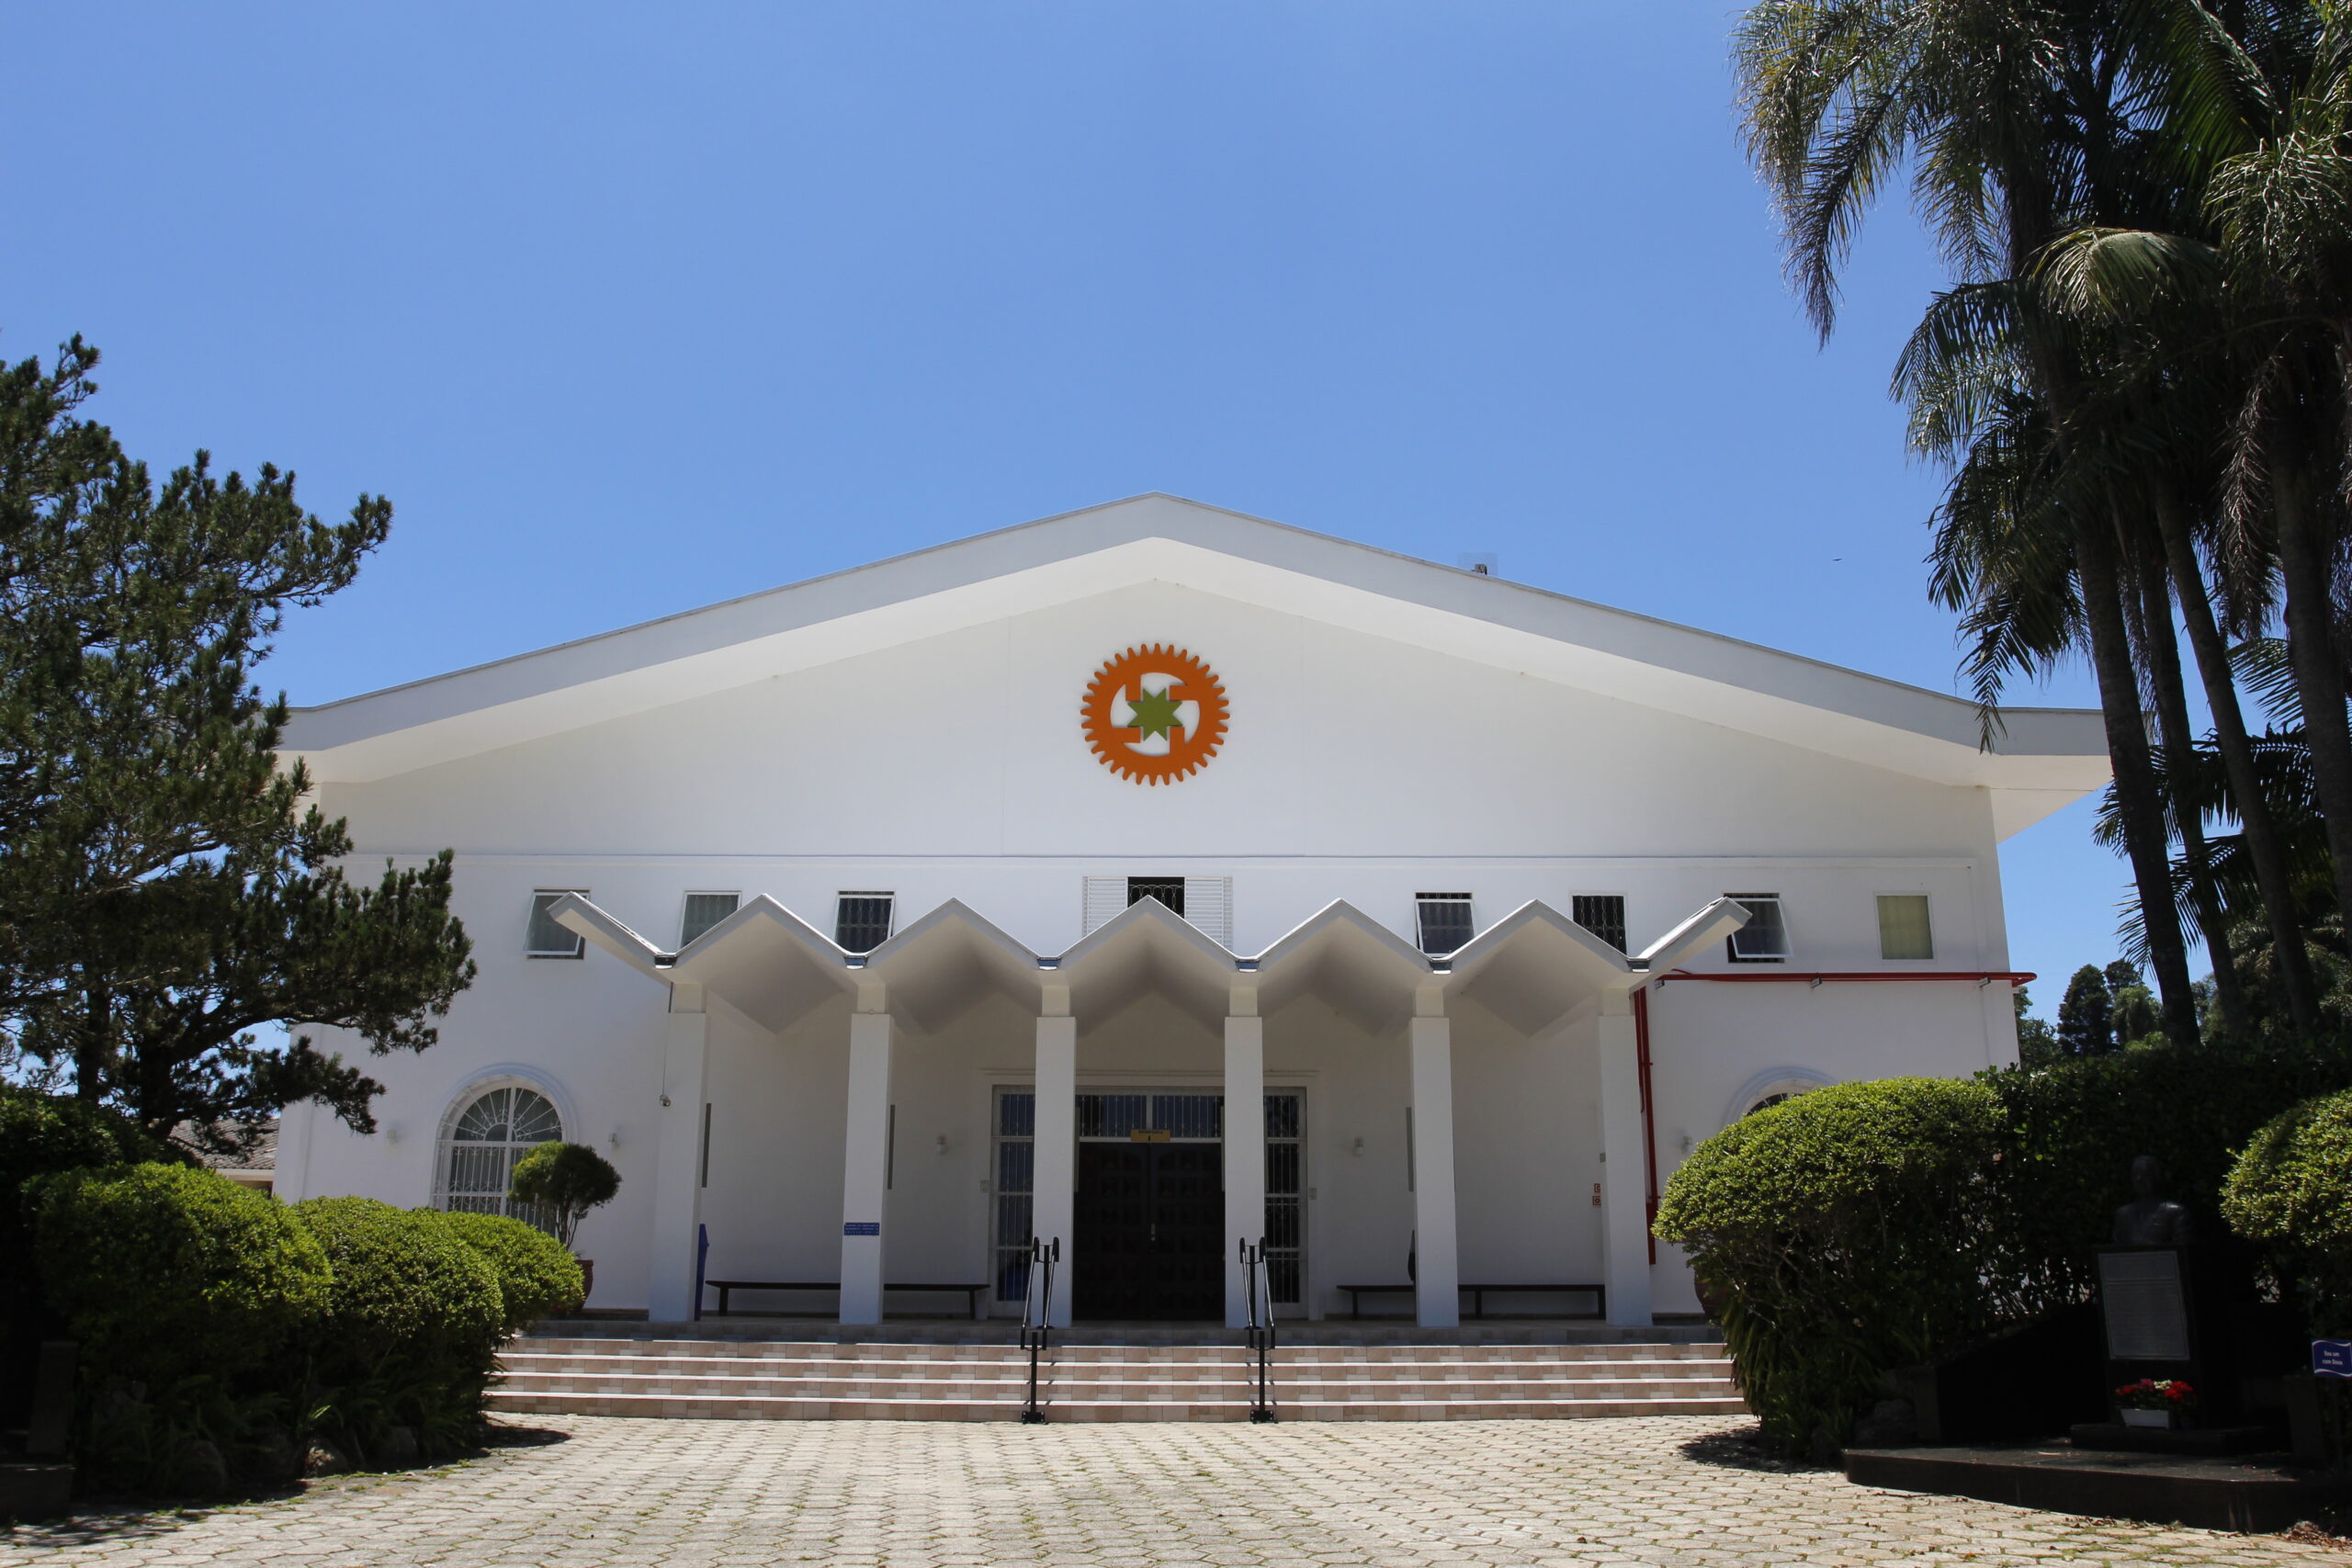 Fachada Academia de Ibiuna 1 scaled Academias e Seminários - Academias As Academias de Treinamento Espiritual da Seicho-No-Ie estão localizadas em todas as regiões do Brasil. De norte a sul, de leste a oeste, temos um lugar para nos reunirmos e aprimorar o nosso espírito. 